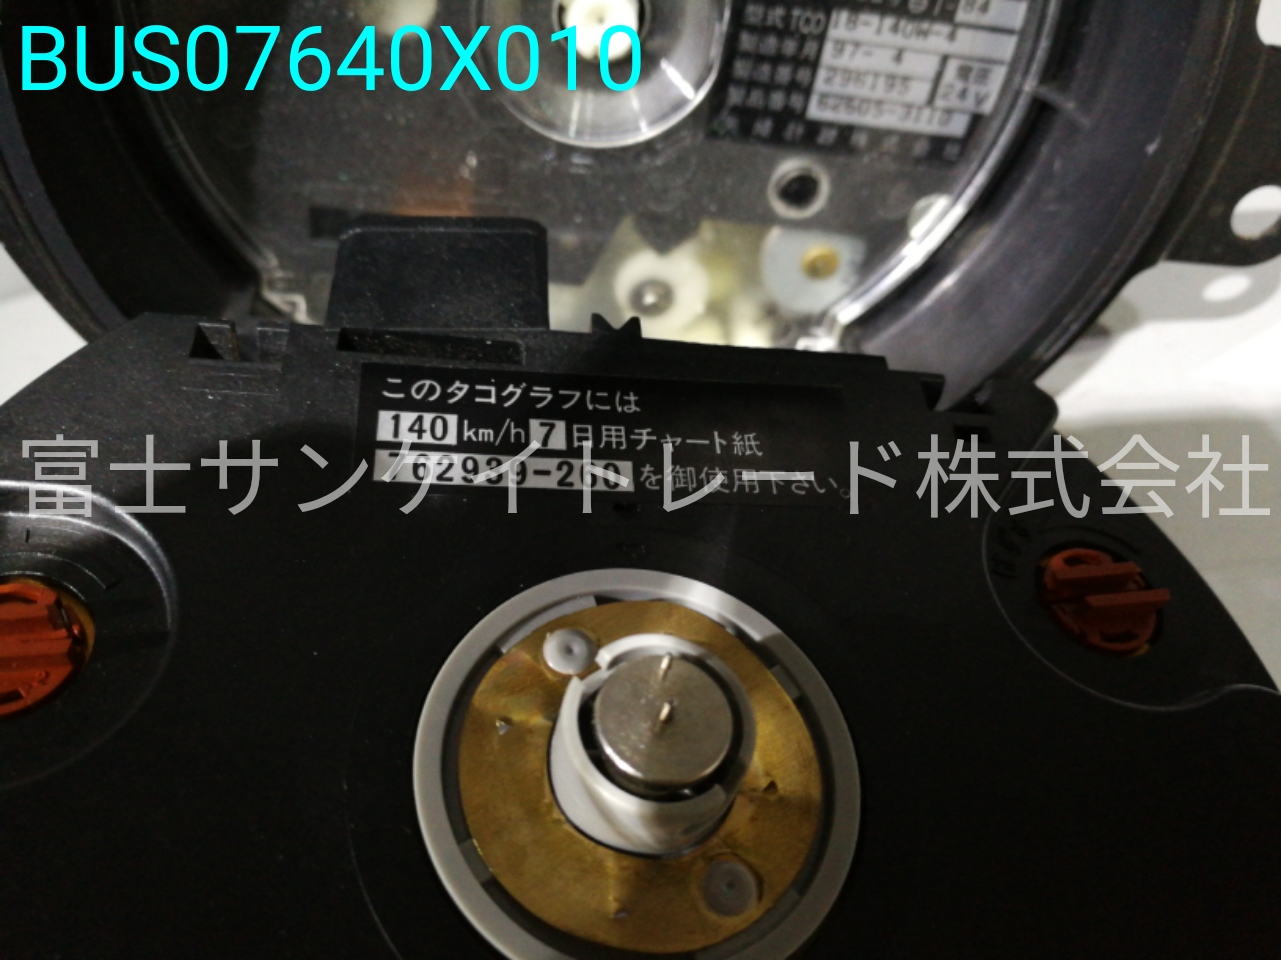 矢崎 KL-LV774R2 メーター（タコグラフ） 2485087C00[BUS07640X010 